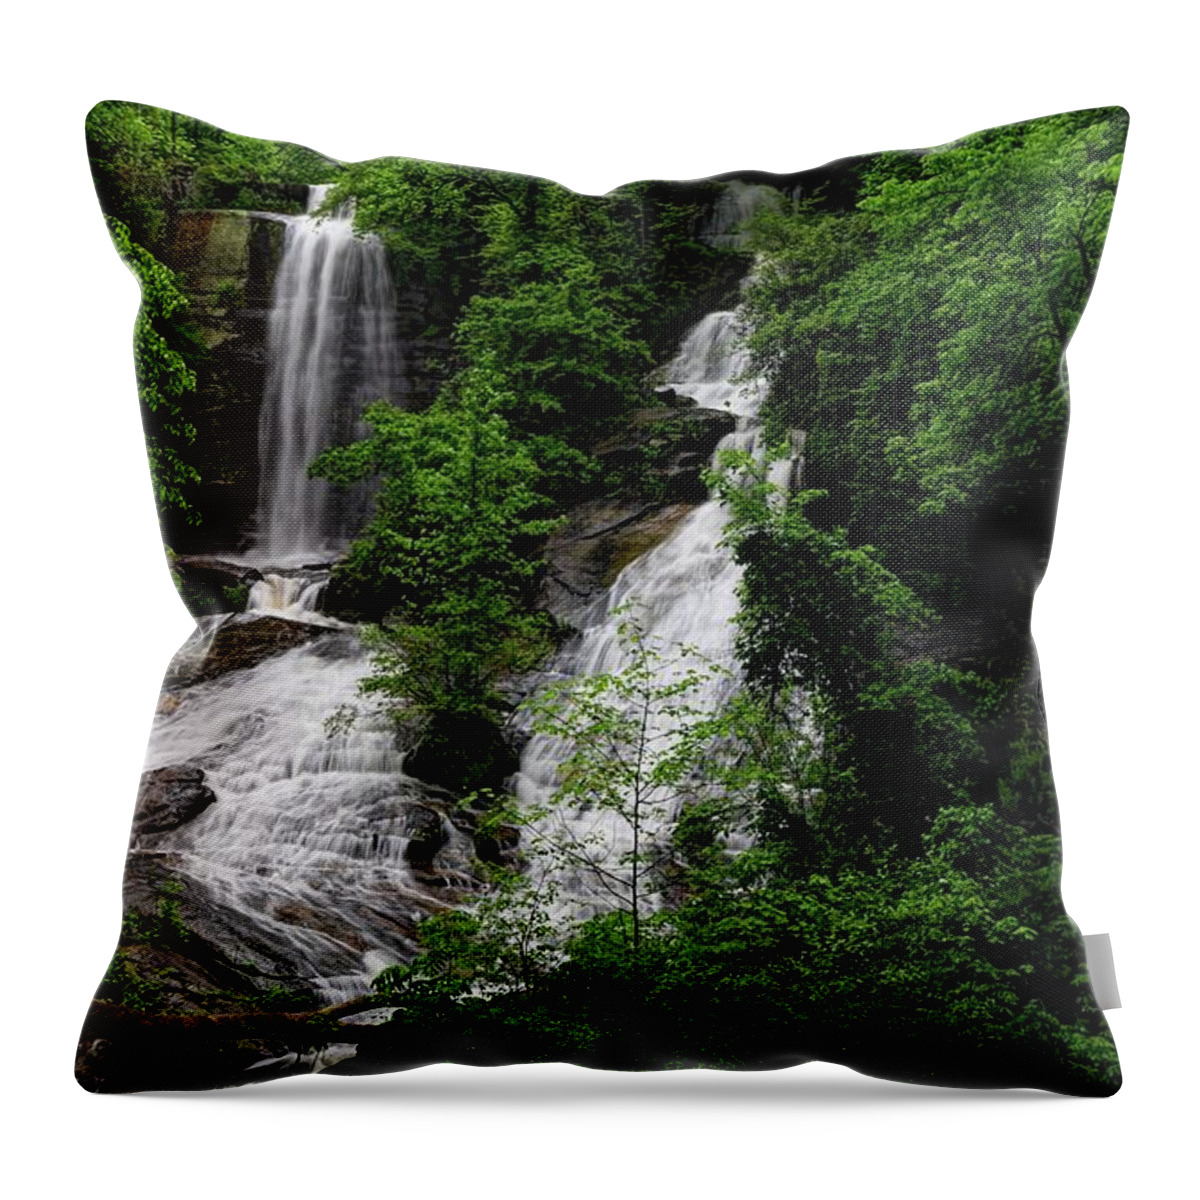 Twin Falls South Carolina Throw Pillow featuring the photograph Twin Falls South Carolina by Carol Montoya